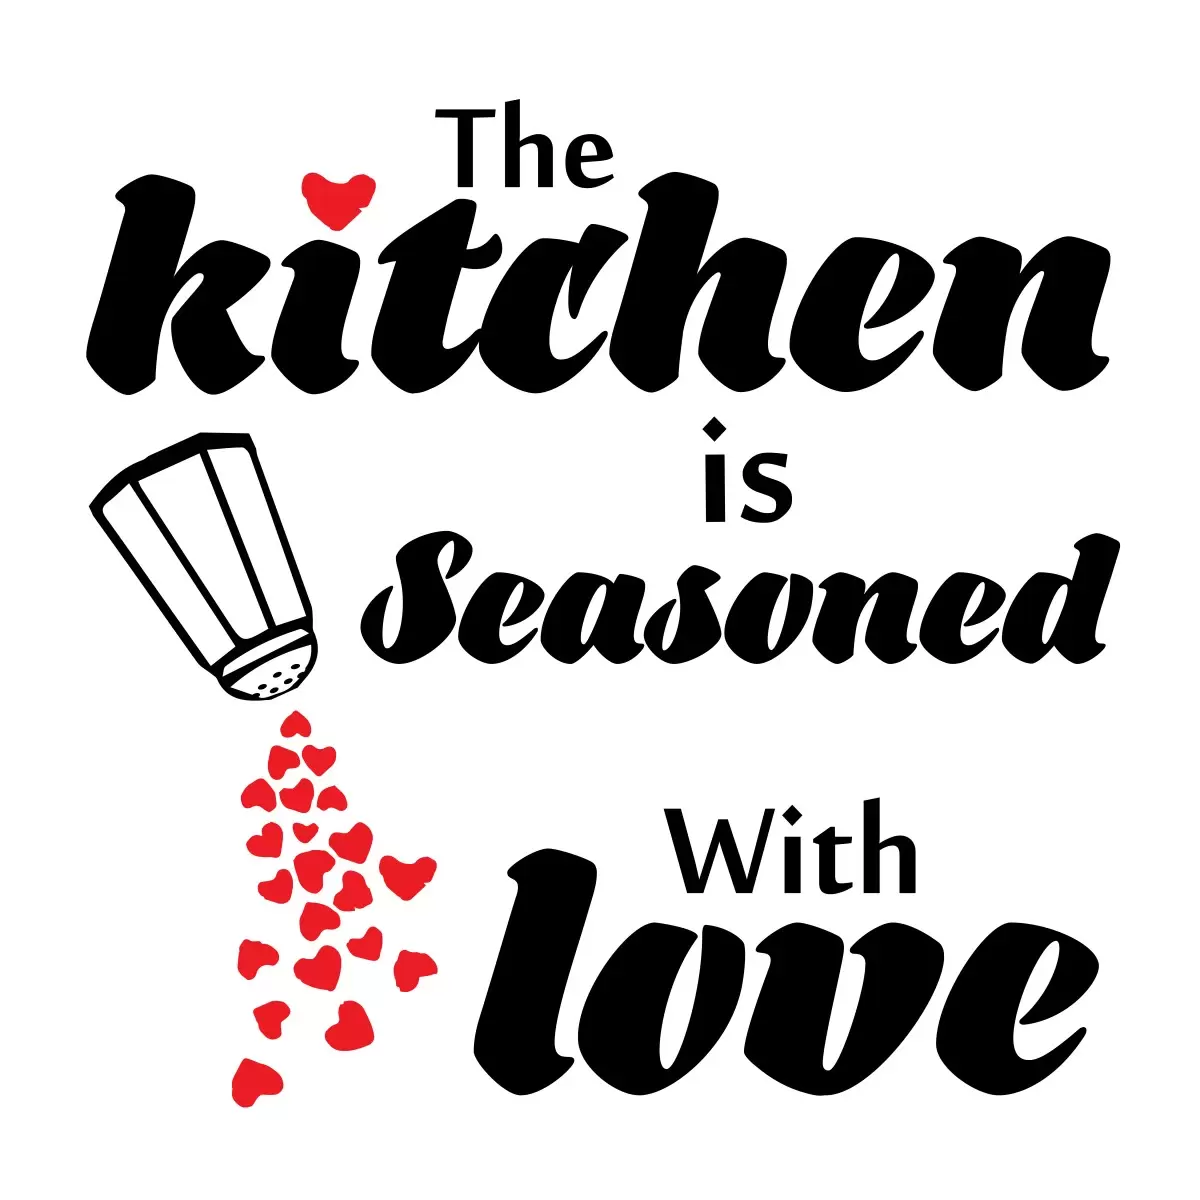 Kitchen seasoned with lov - מסגרת עיצובים - תמונות למטבח מודרני טיפוגרפיה דקורטיבית  - מק''ט: 240699